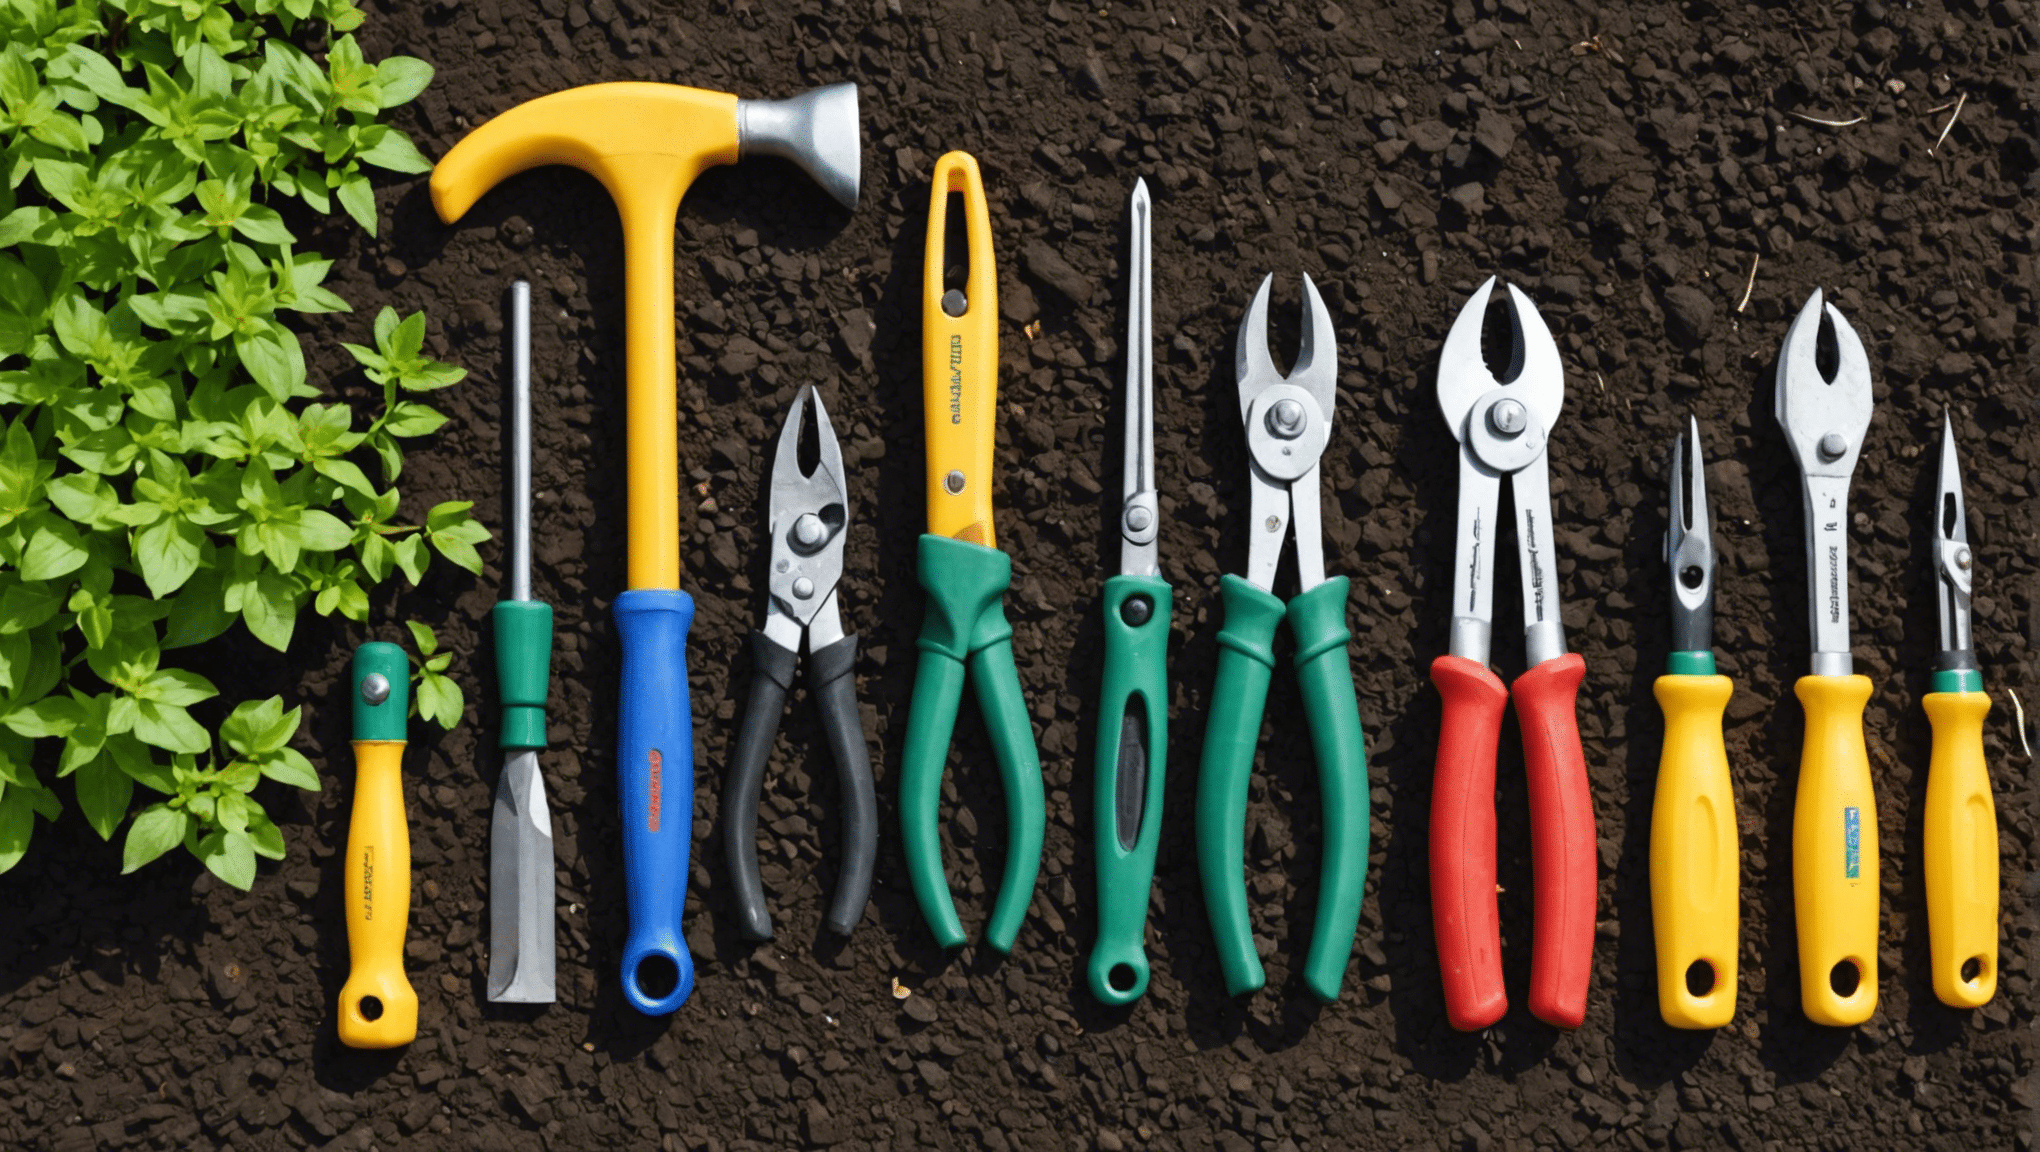 découvrez les outils indispensables pour le jardinage et améliorez votre expérience de jardinage avec le bon équipement. apprenez à choisir les outils adaptés à vos besoins et à entretenir votre jardin plus efficacement.